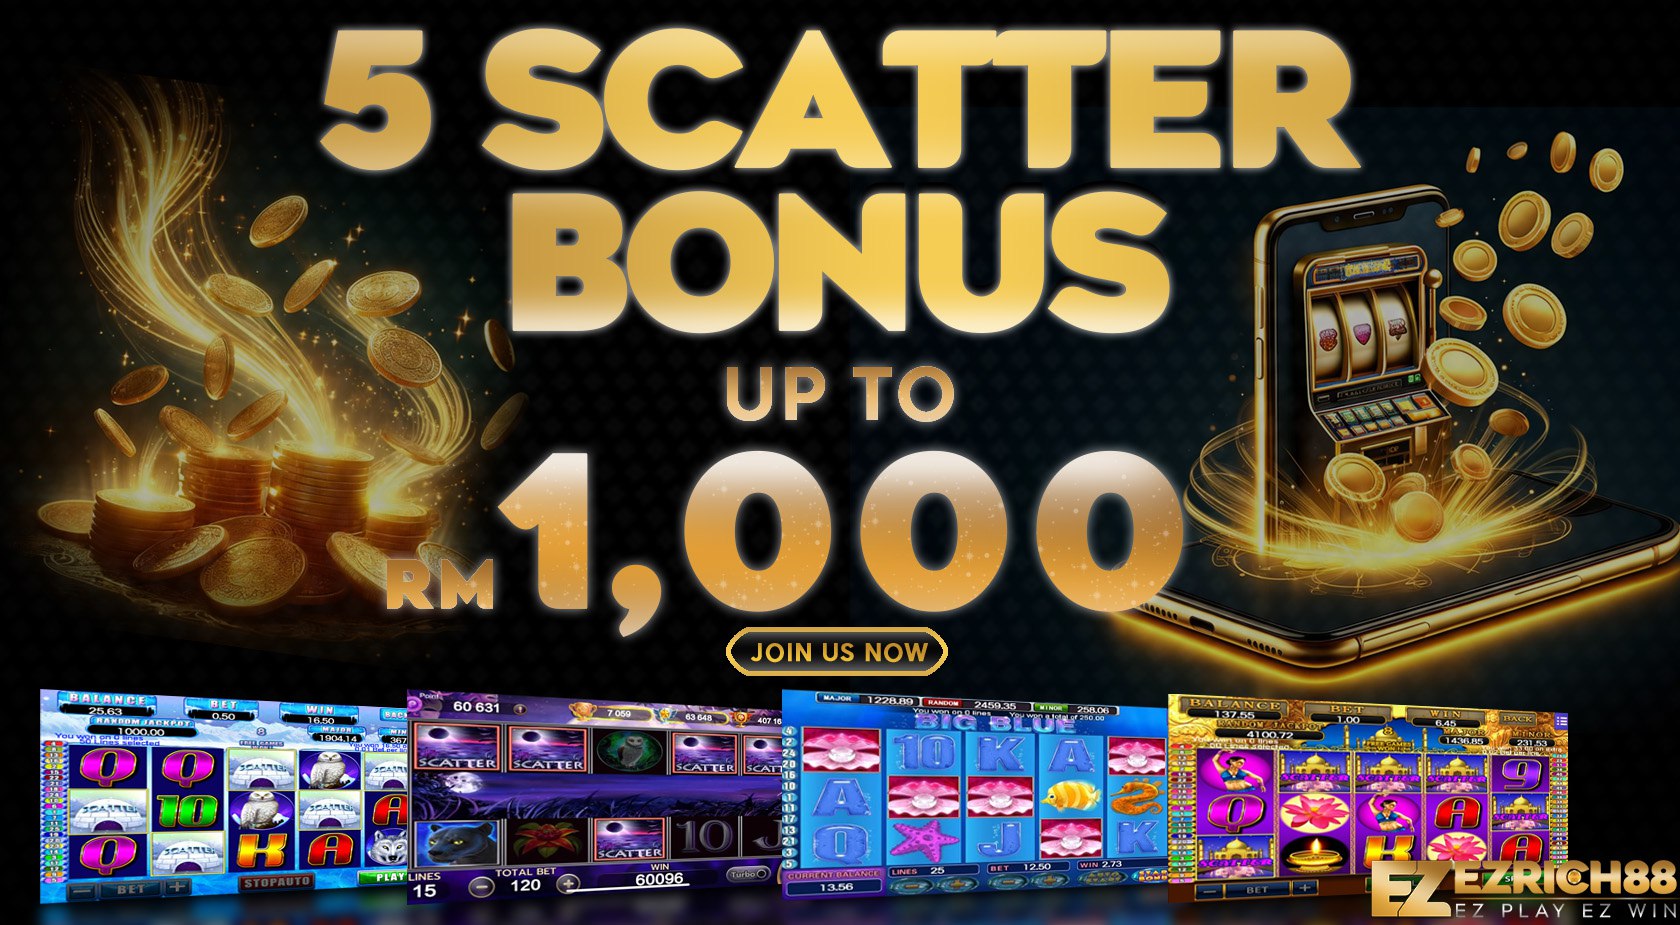 Scatter Bonus RM1000